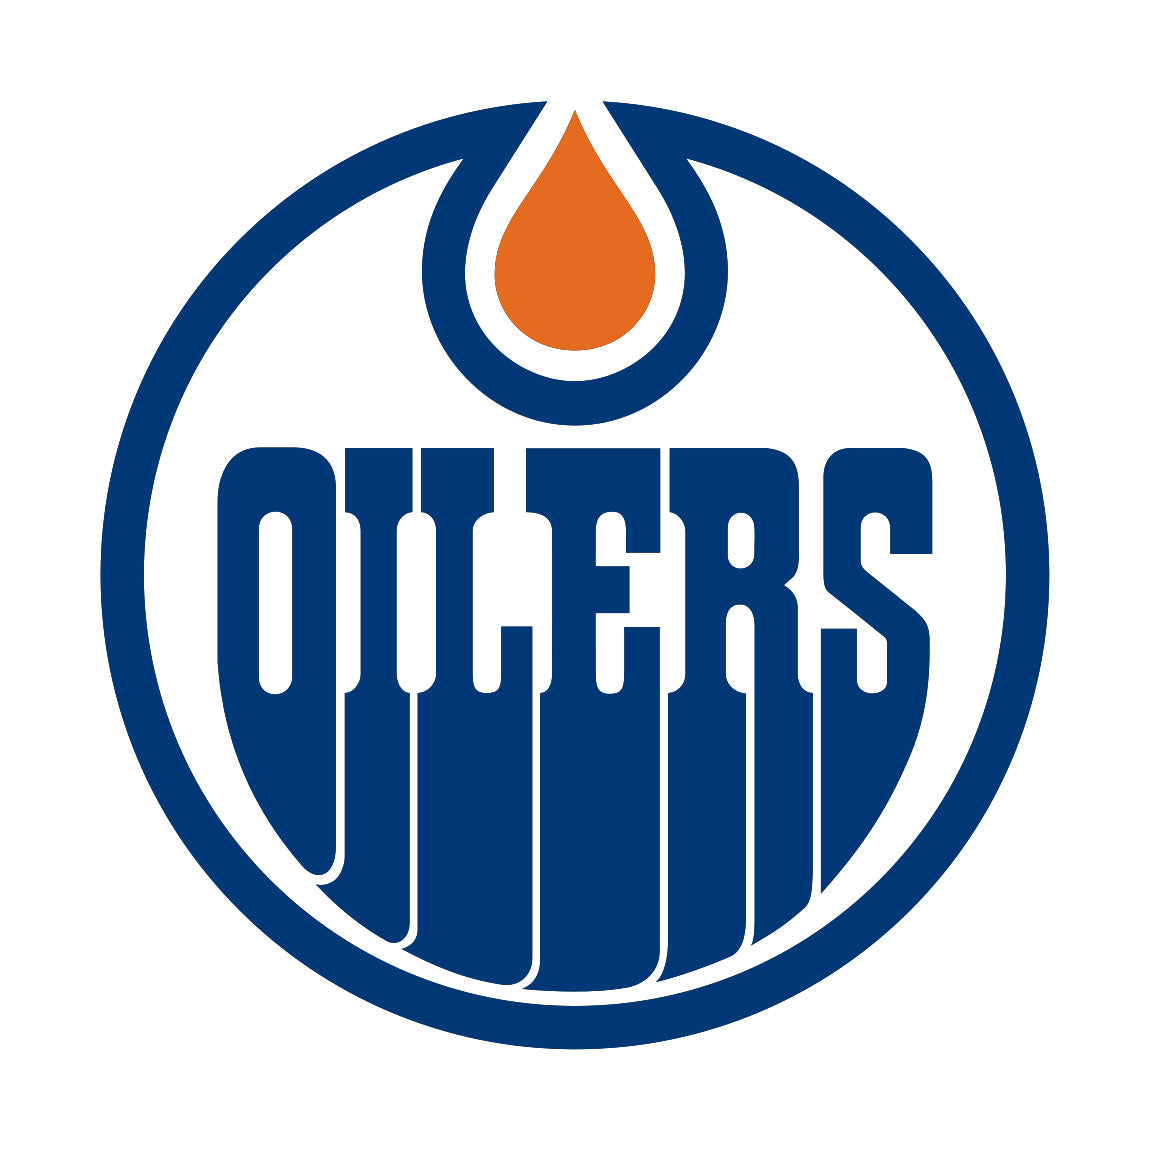 Team Golf NHL Edmonton Oilers